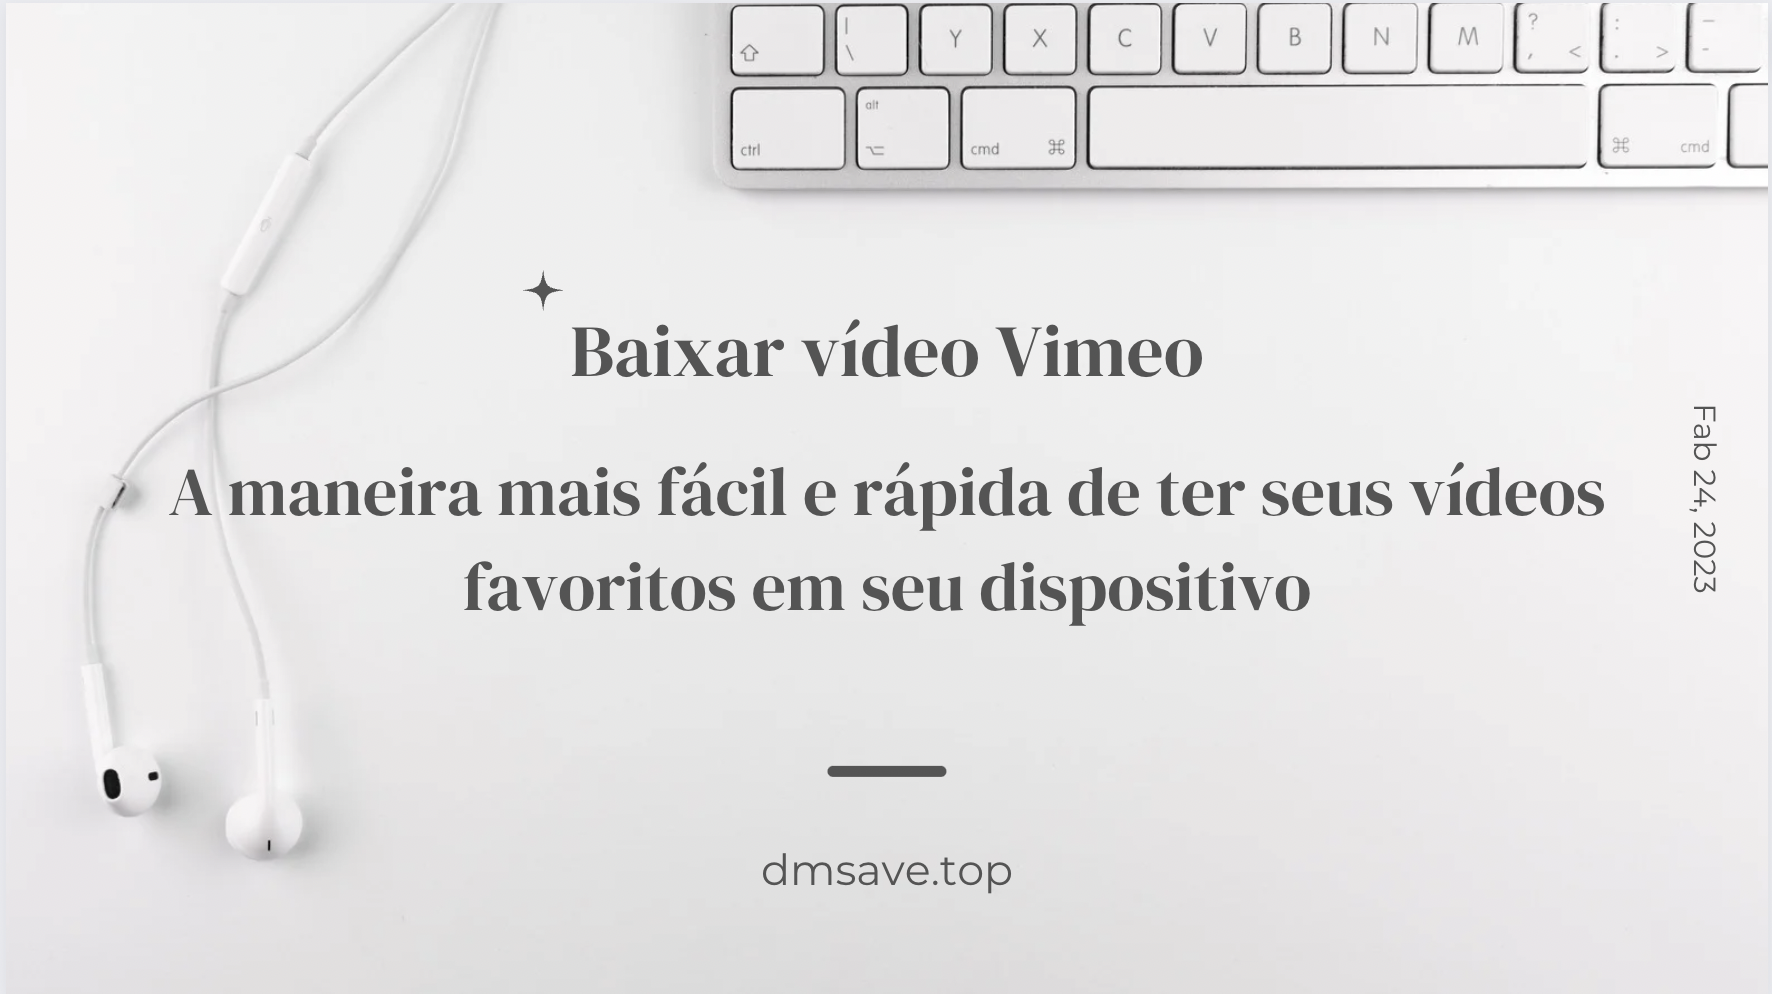 Baixar vídeo Vimeo| A maneira mais fácil e rápida de ter seus vídeos favoritos em seu dispositivo